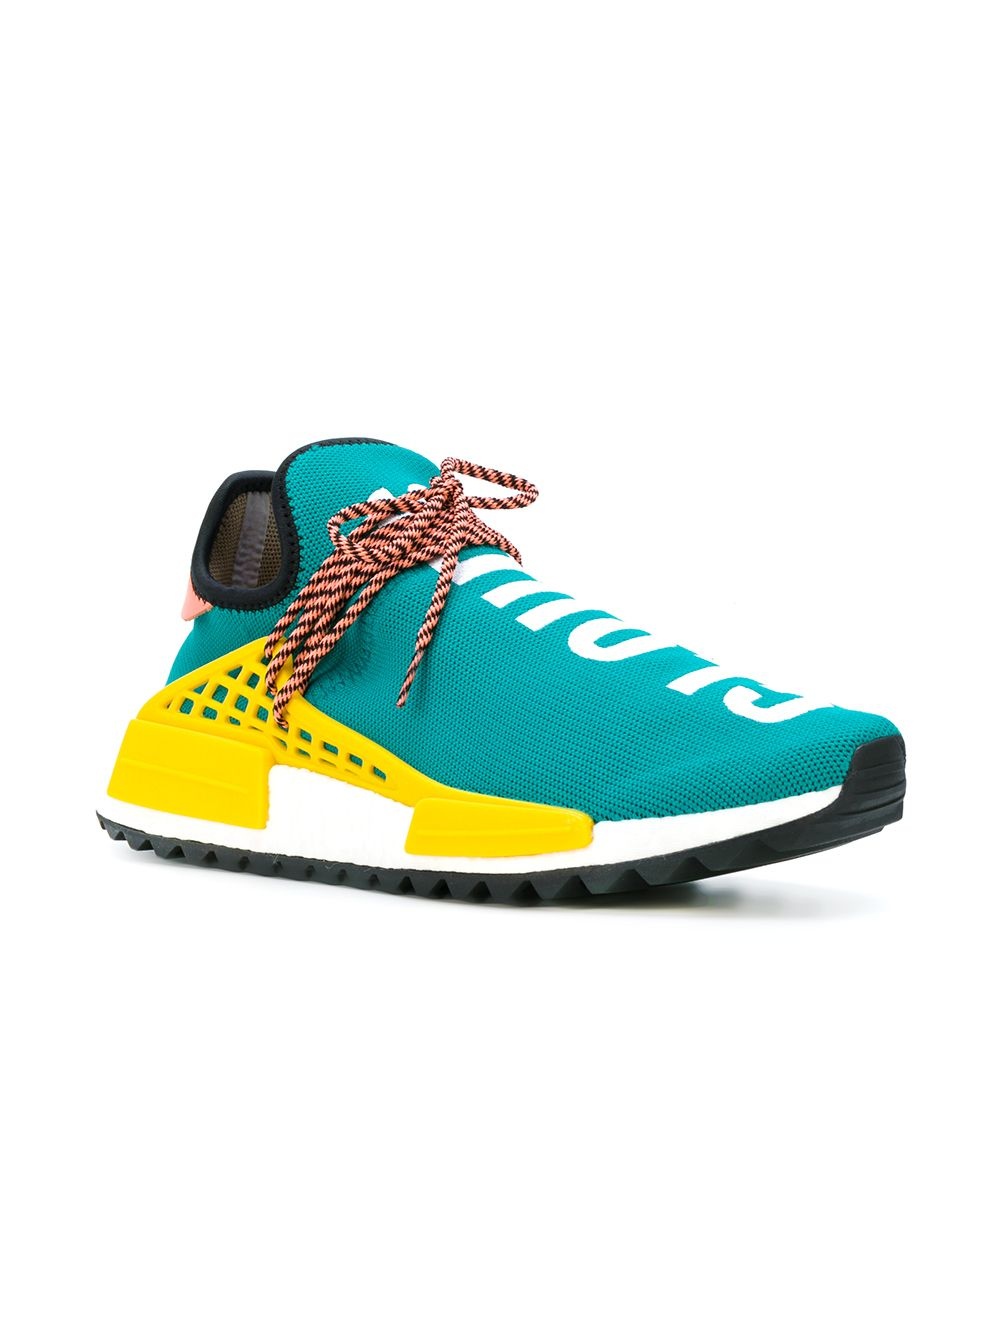 x Pharrell Williams Human Race NMD TR “Sun Glow” sneakers - 2